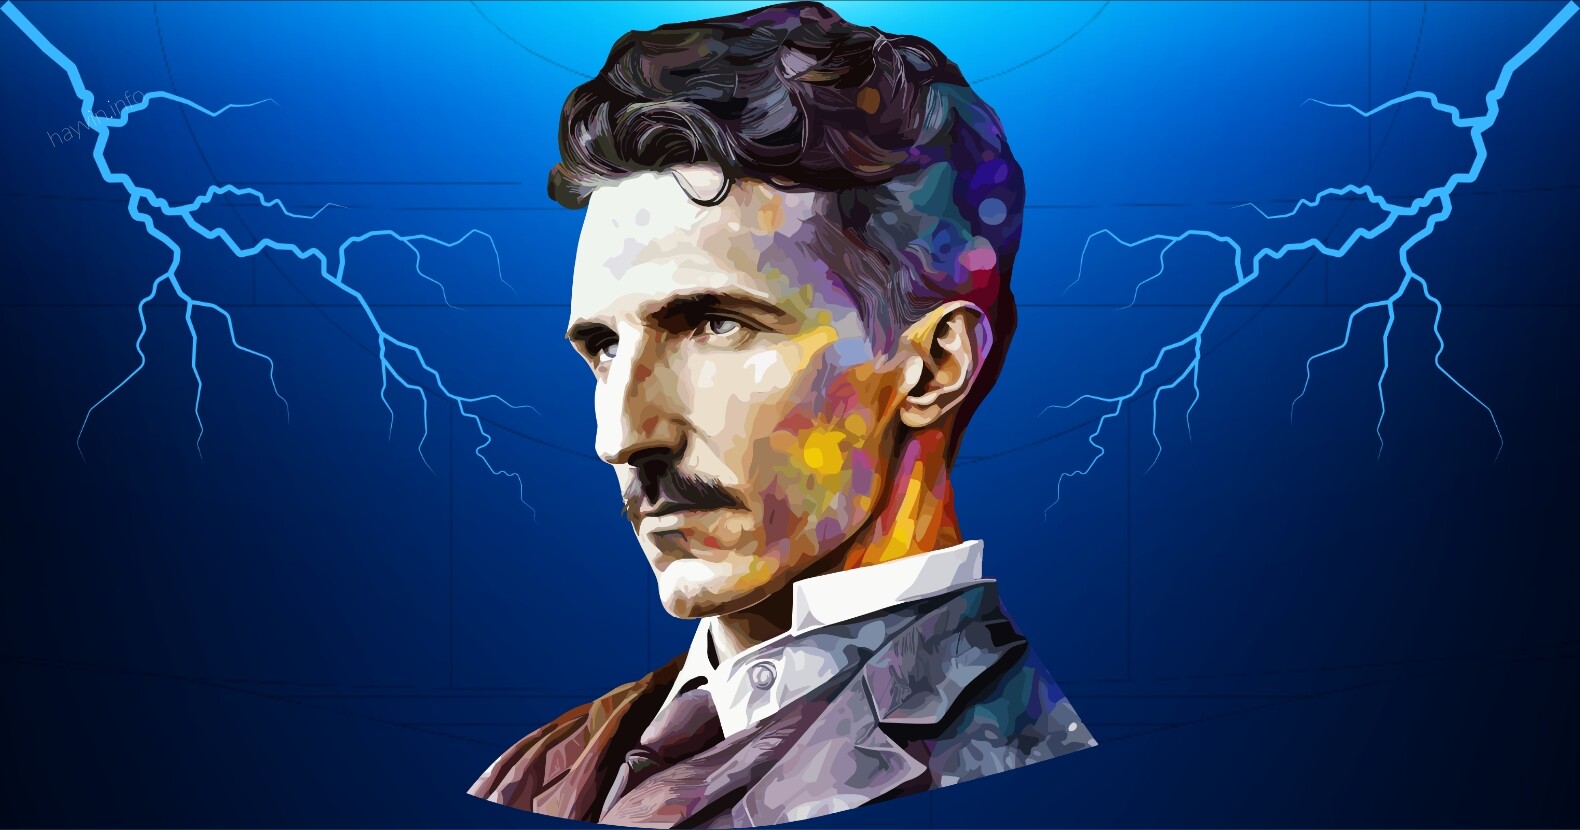 Nikola Tesla rejtvénye, amelyet csak az emberek 2%-a képes megfejteni, MAXIMÁLIS NEHÉZSÉGŰ vírusos kihívás